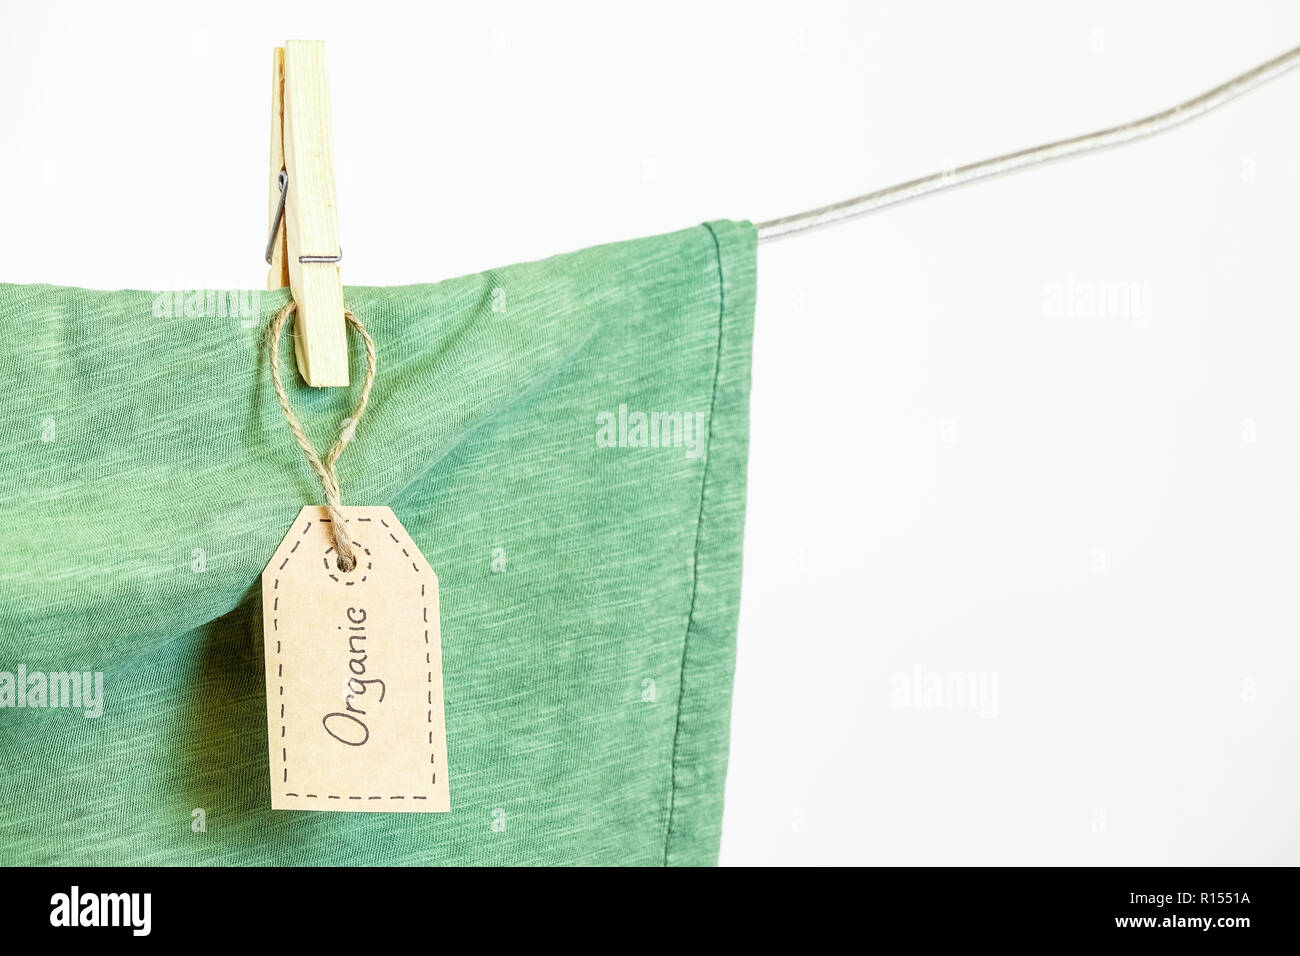 Abbigliamento organico. Maglietta verde appeso su uno stendibiancheria. Sfondo bianco. Copia dello spazio. Foto Stock